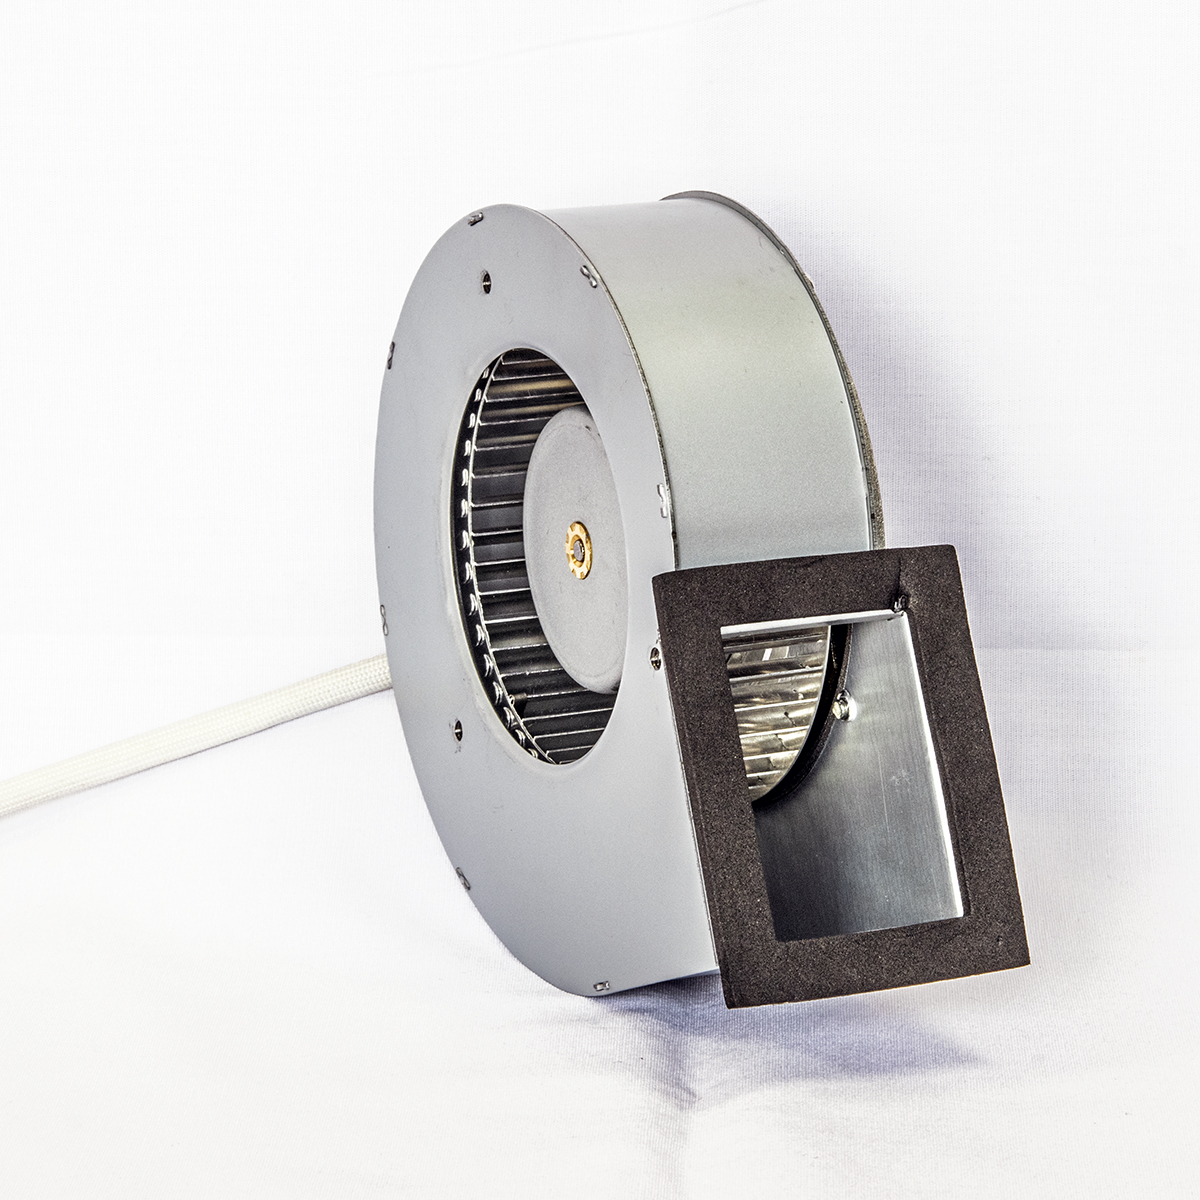 Low noise extractor fan